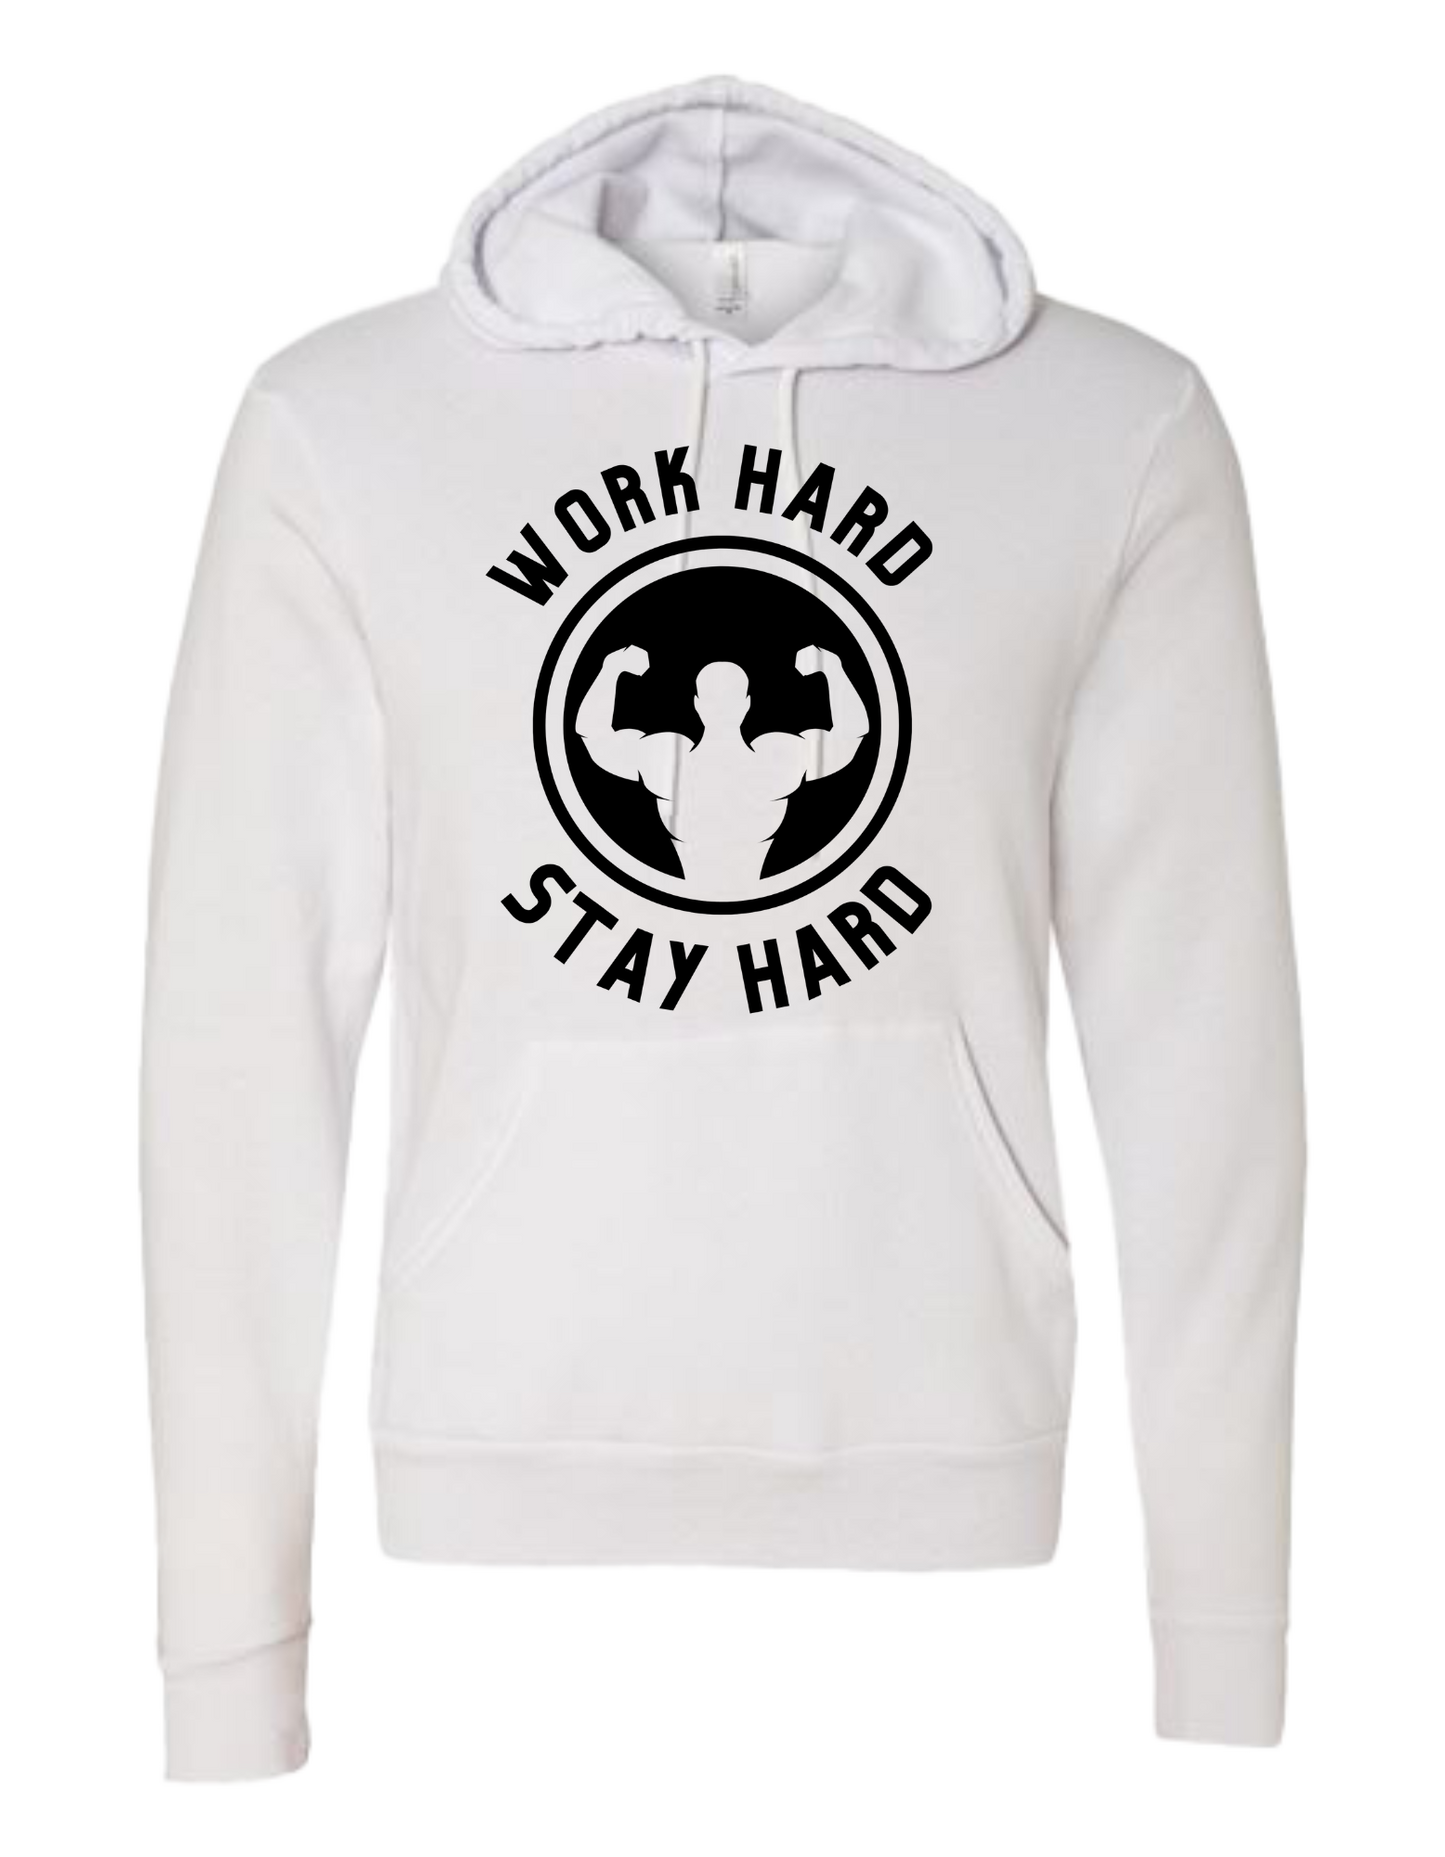 Word Hard Stay Hard -